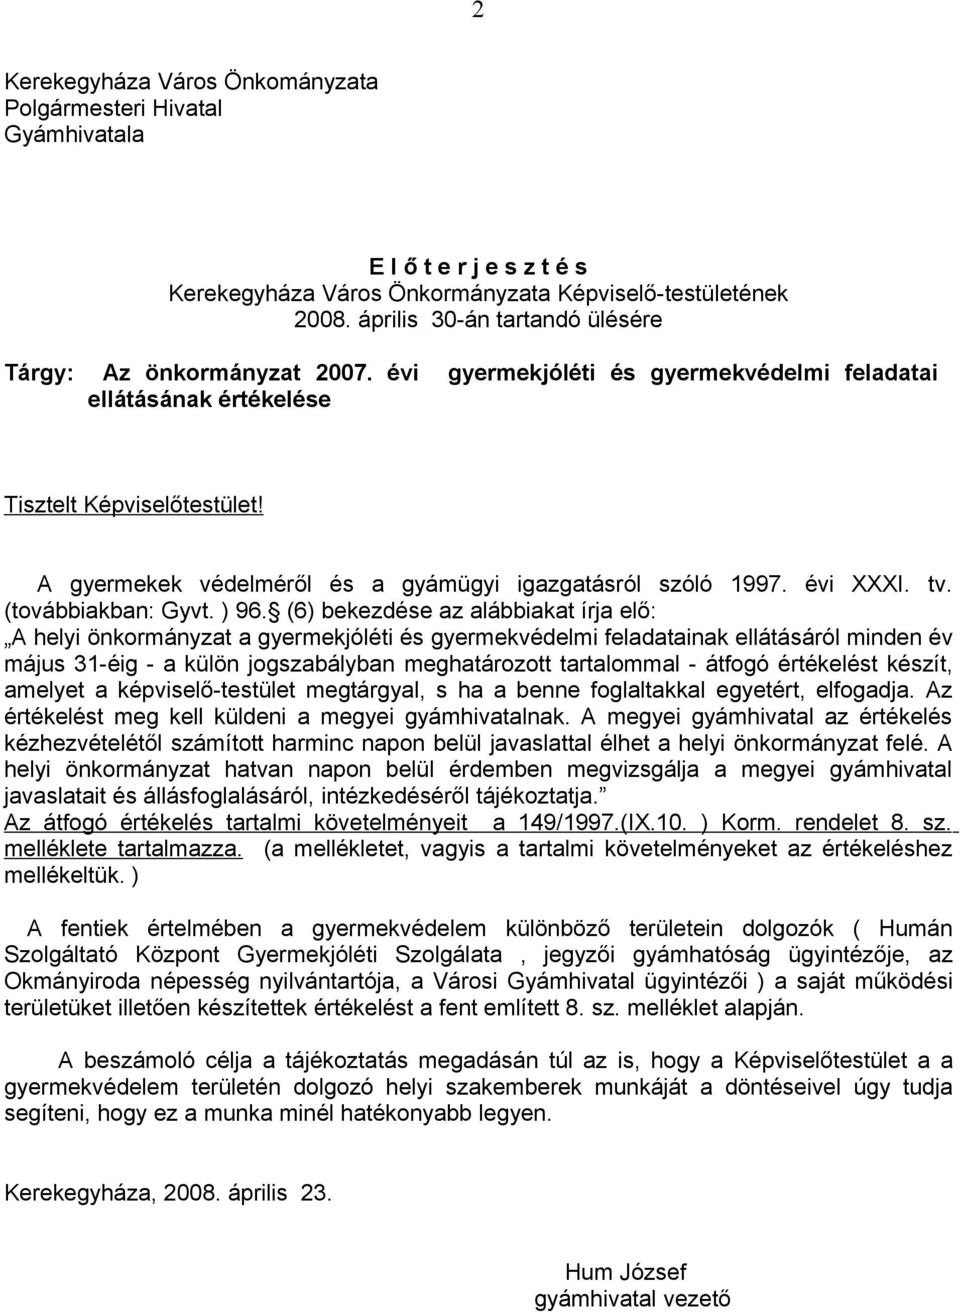 A gyermekek védelméről és a gyámügyi igazgatásról szóló 1997. évi XXXI. tv. (továbbiakban: Gyvt. ) 96.